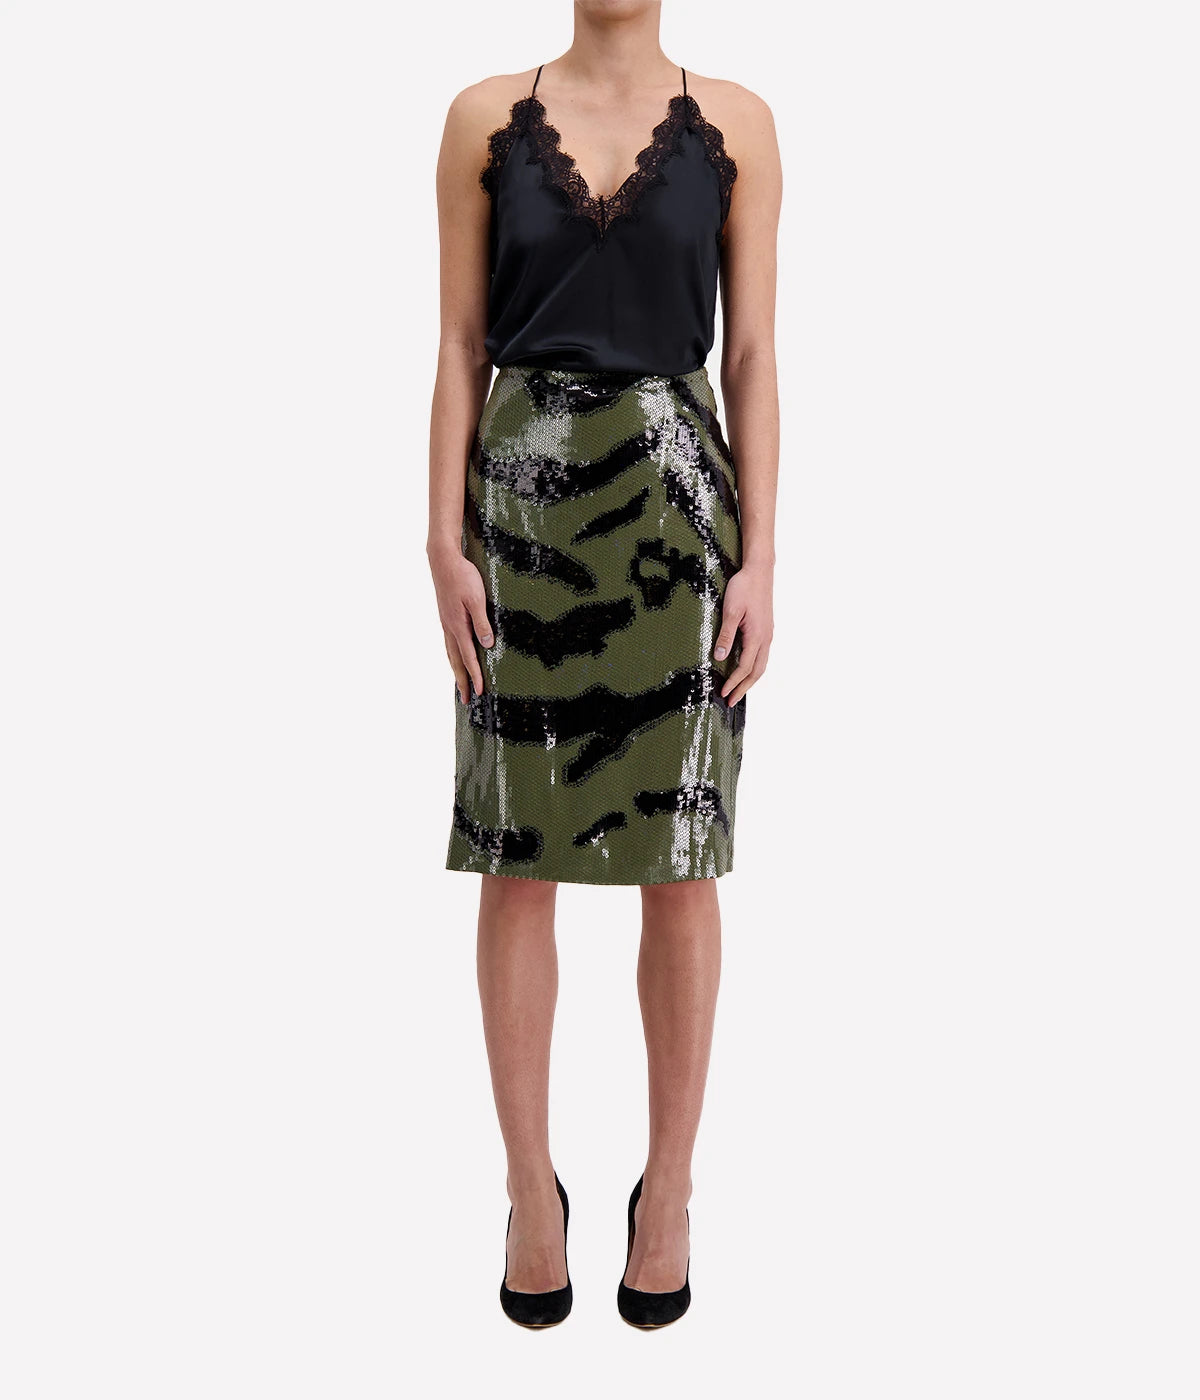 Bonne Zebra Sequin Skirt in Army Green & Black